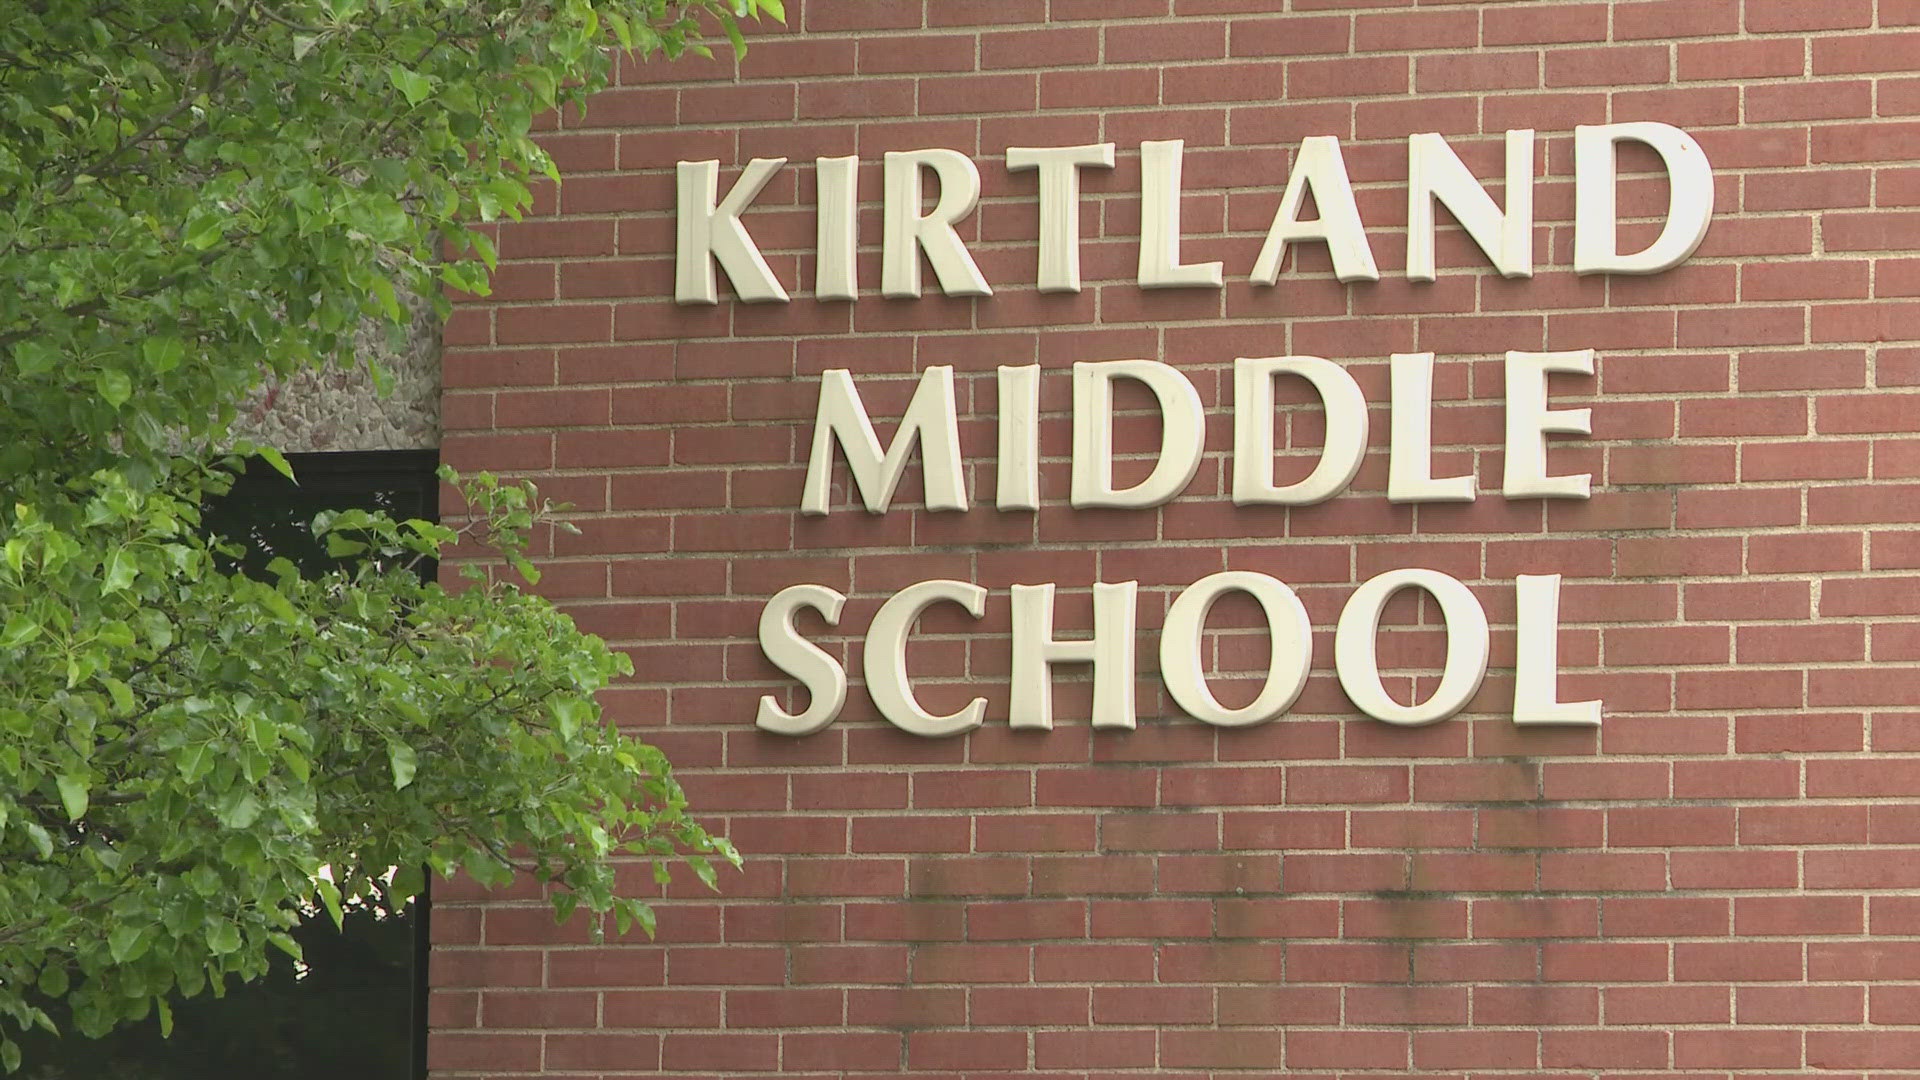 Screen-free week is underway at Kirtland Middle School.